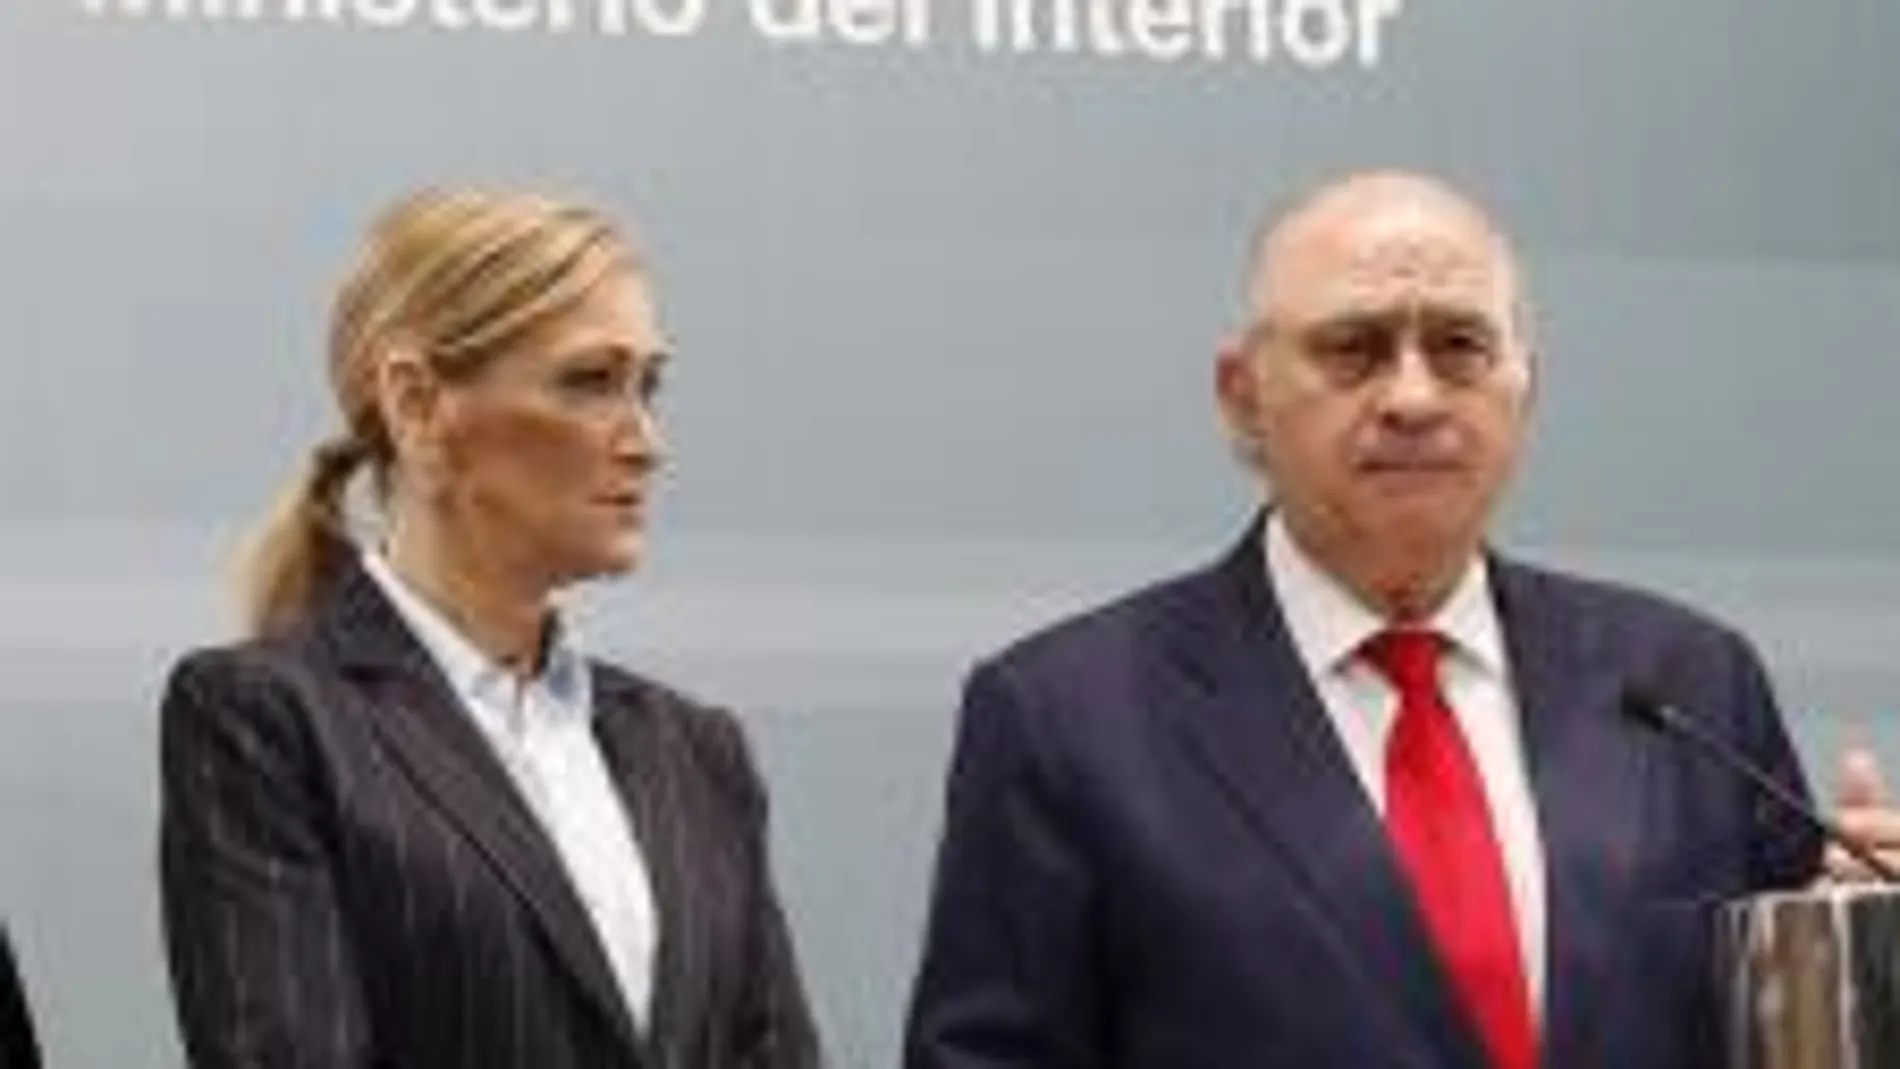 El ministro del Interior, Jorge Fernández Díaz, y la delegada del Gobierno, Cristina Cifuentes